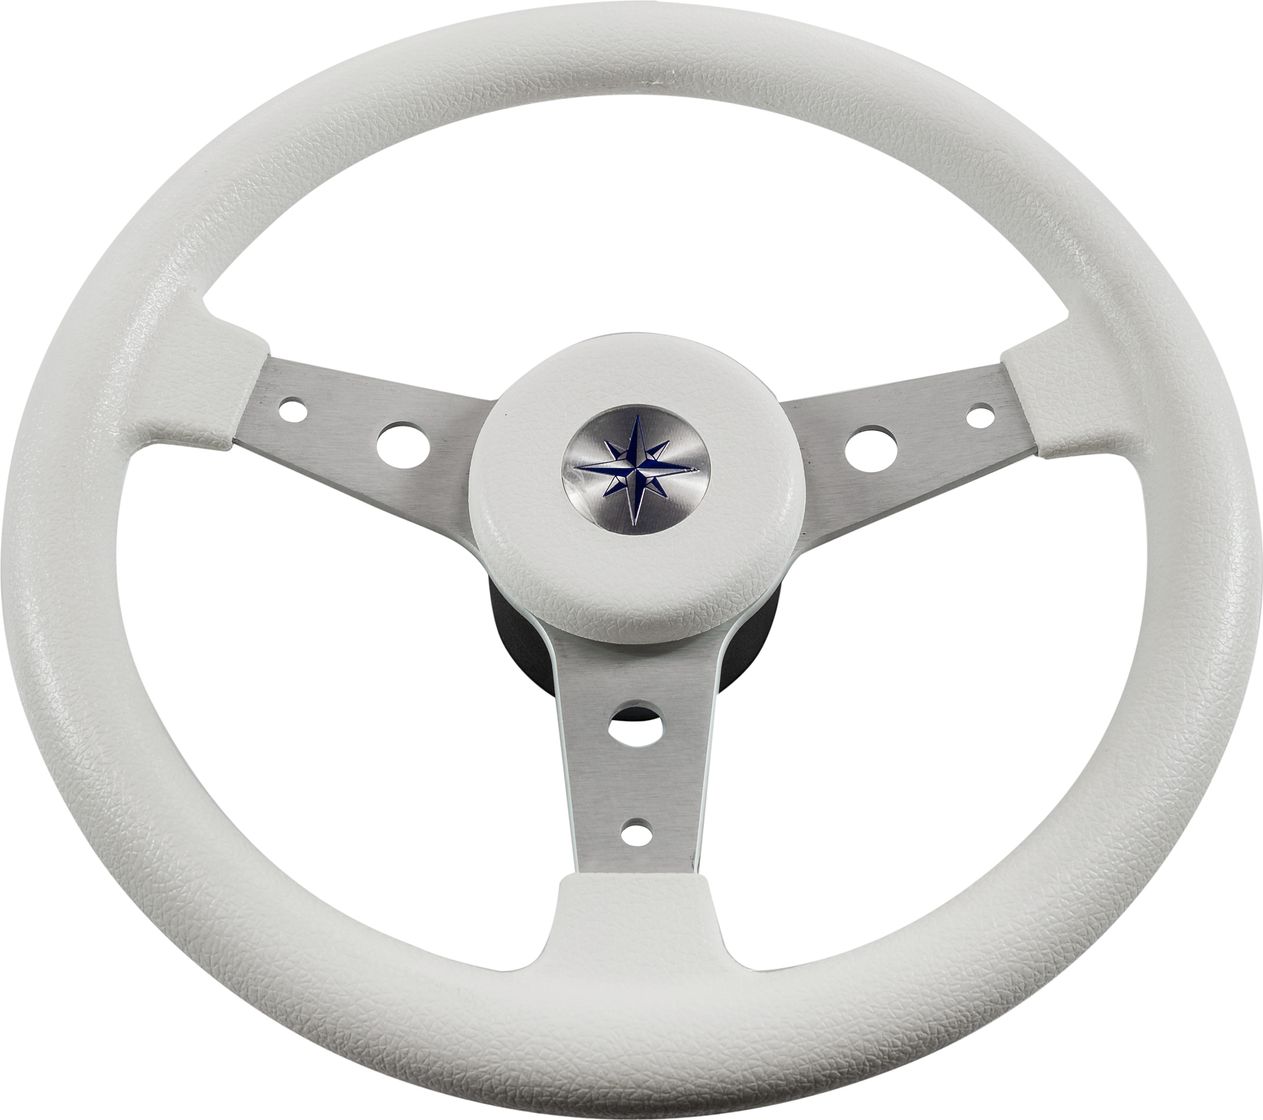 Рулевое колесо DELFINO обод белый,спицы серебряные д. 340 мм VN70401-08 рулевое колесо leader tanegum белый обод серебряные спицы д 360 мм vn7360 08